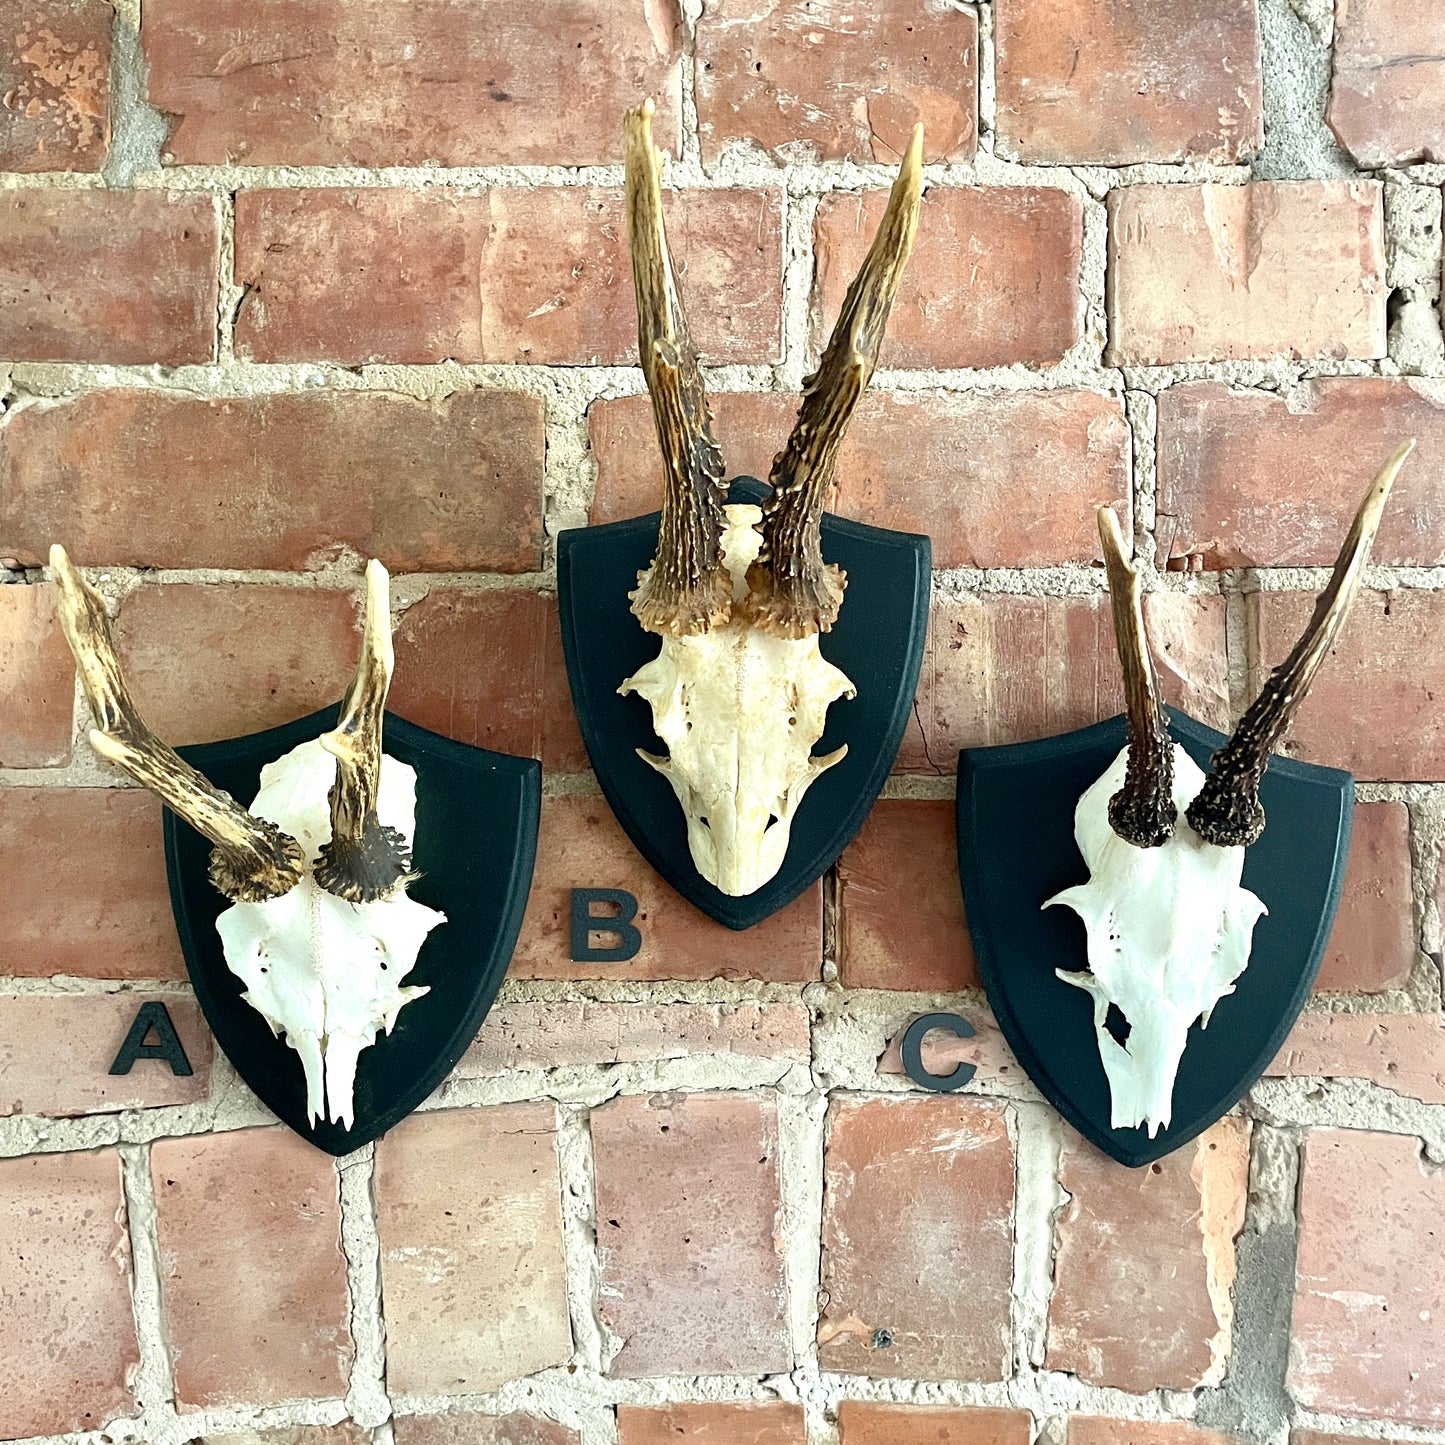 Mounted Roe Deer antlers and skull